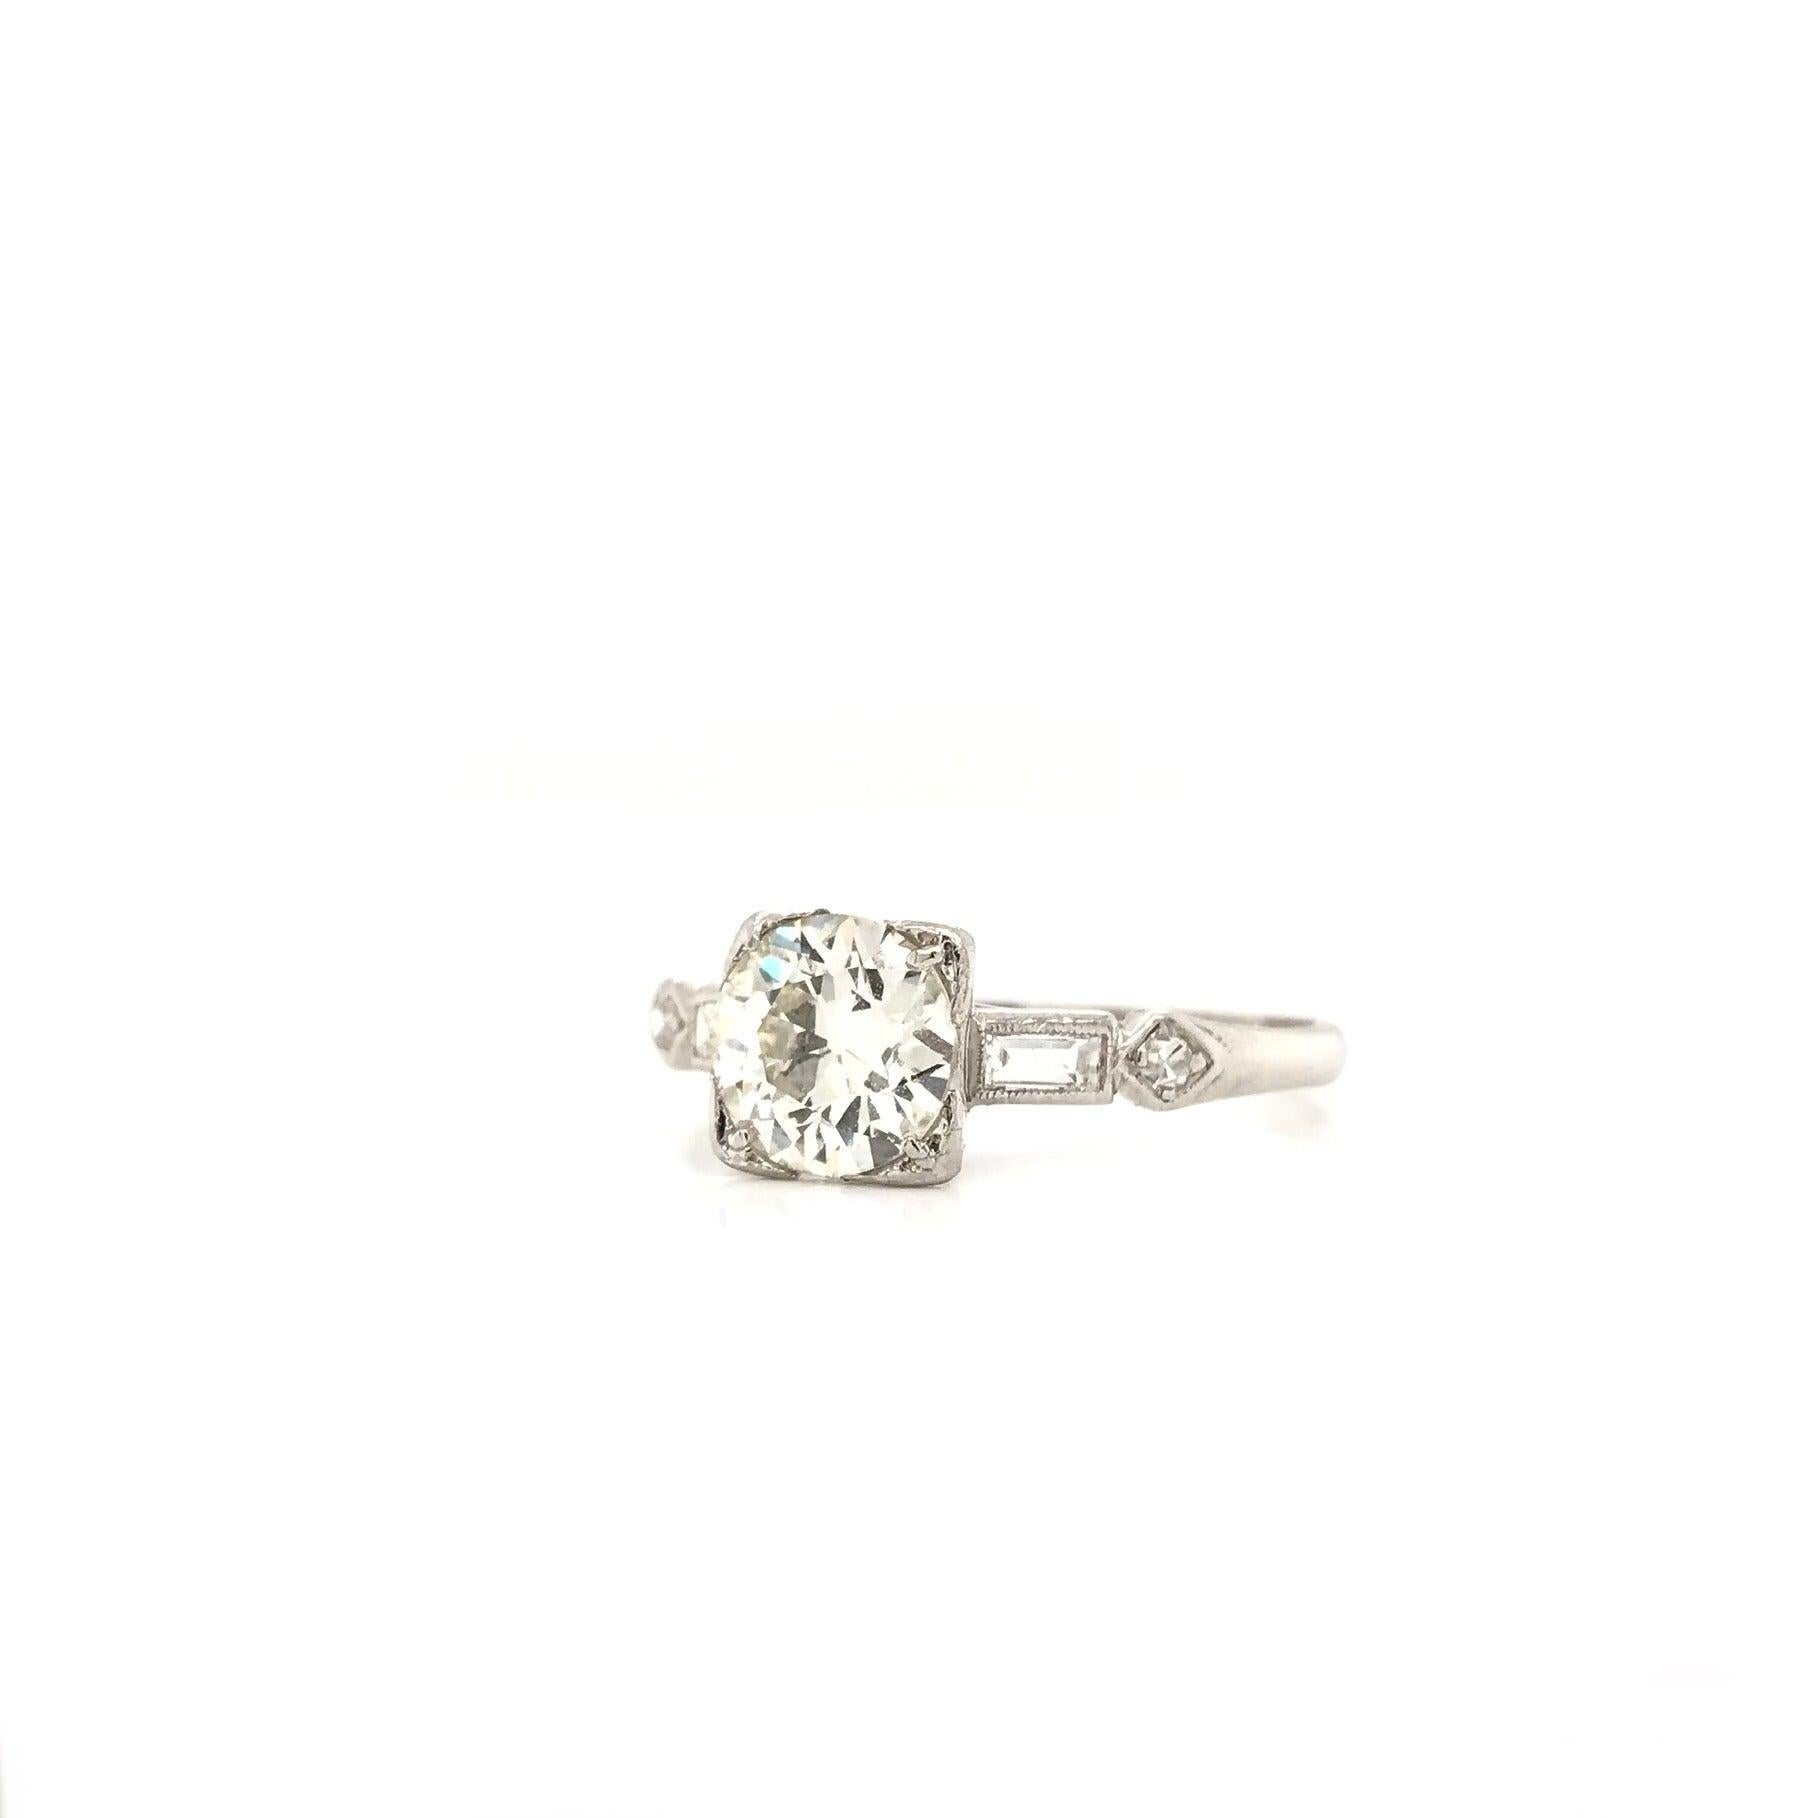 Antique Art Deco 1.12 Carat Diamond Platinum Solitaire Engagement Ring 1